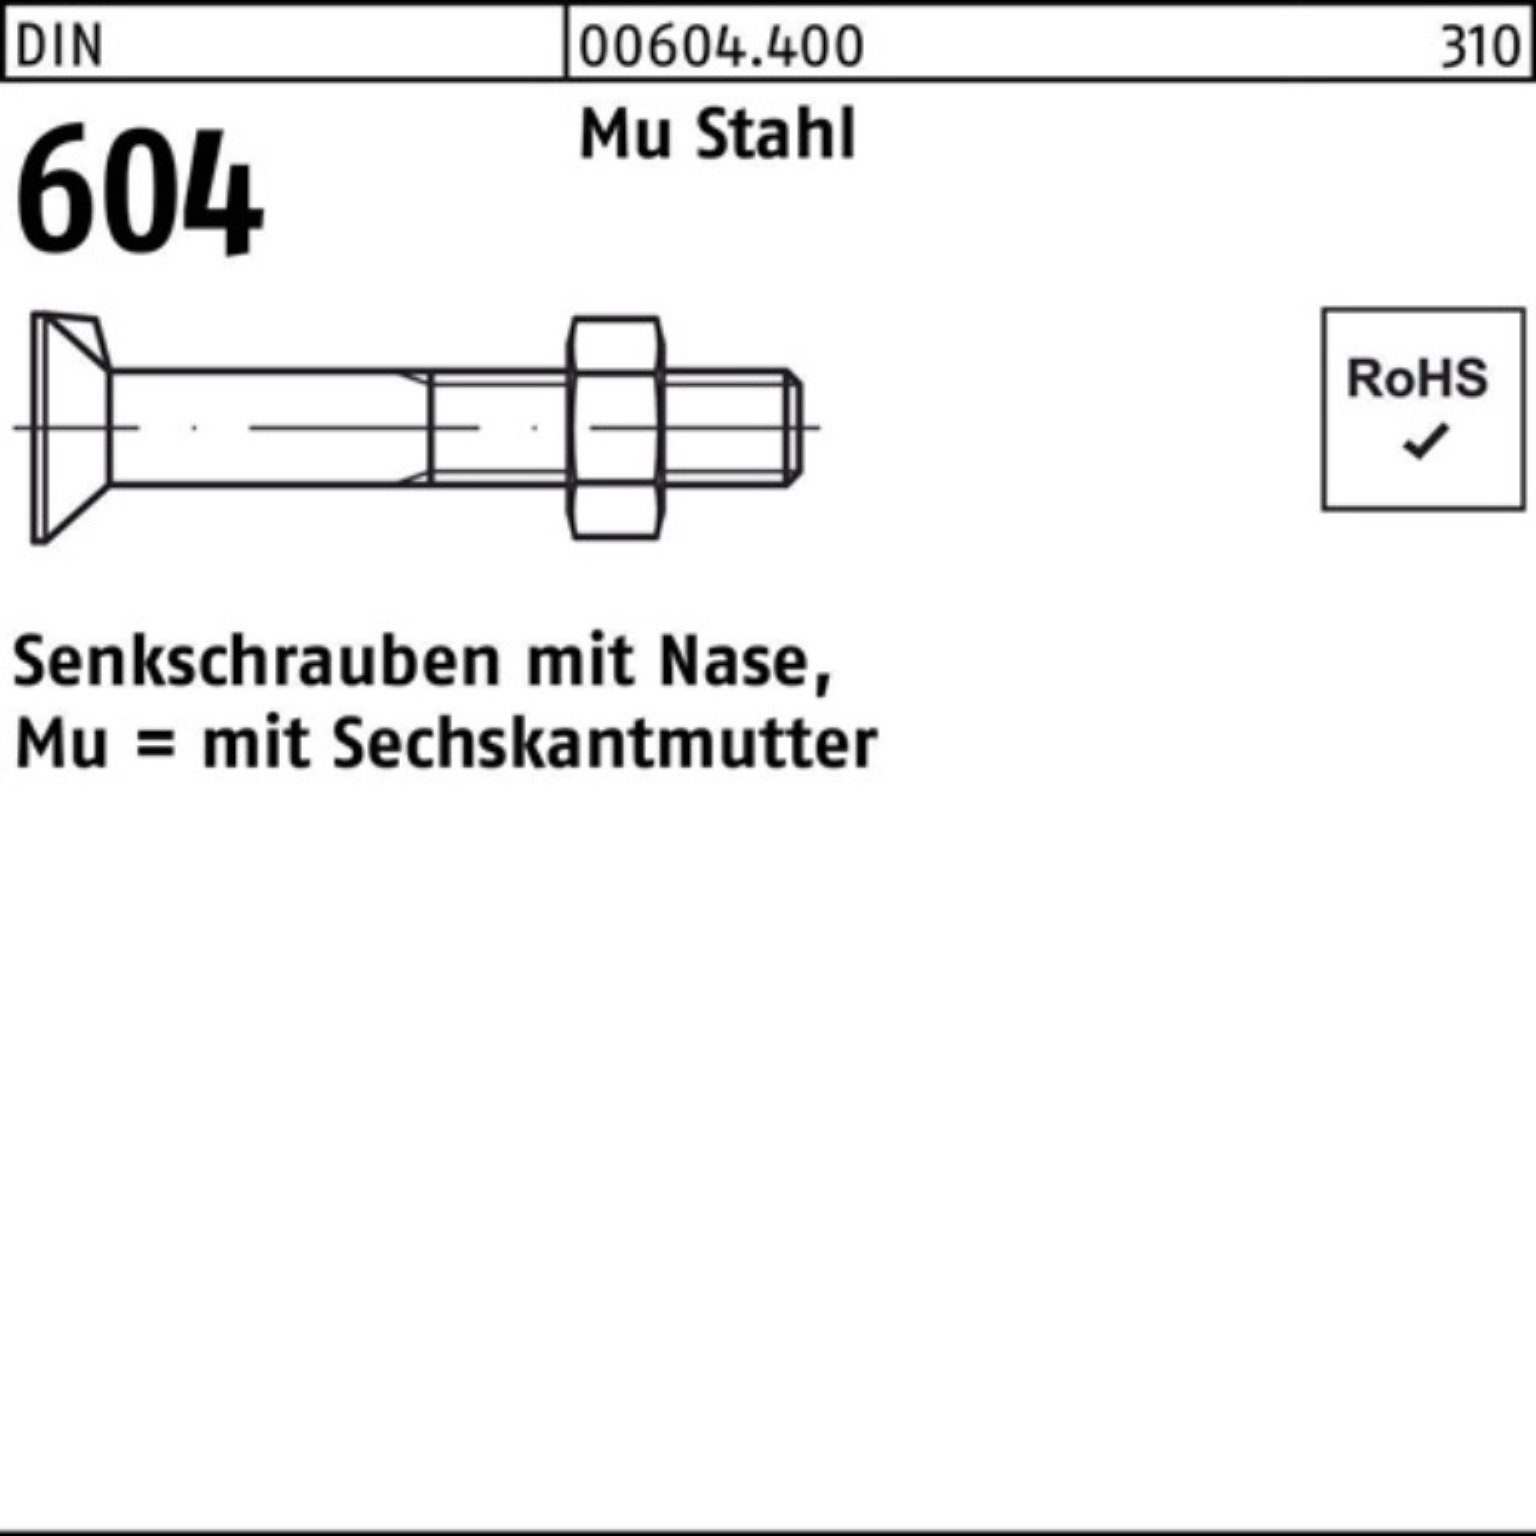 Senkschraube 604 100 Nase/6-ktmutter Pack M12x Reyher Stahl Senkschraube DIN 100er 4.6 Mu